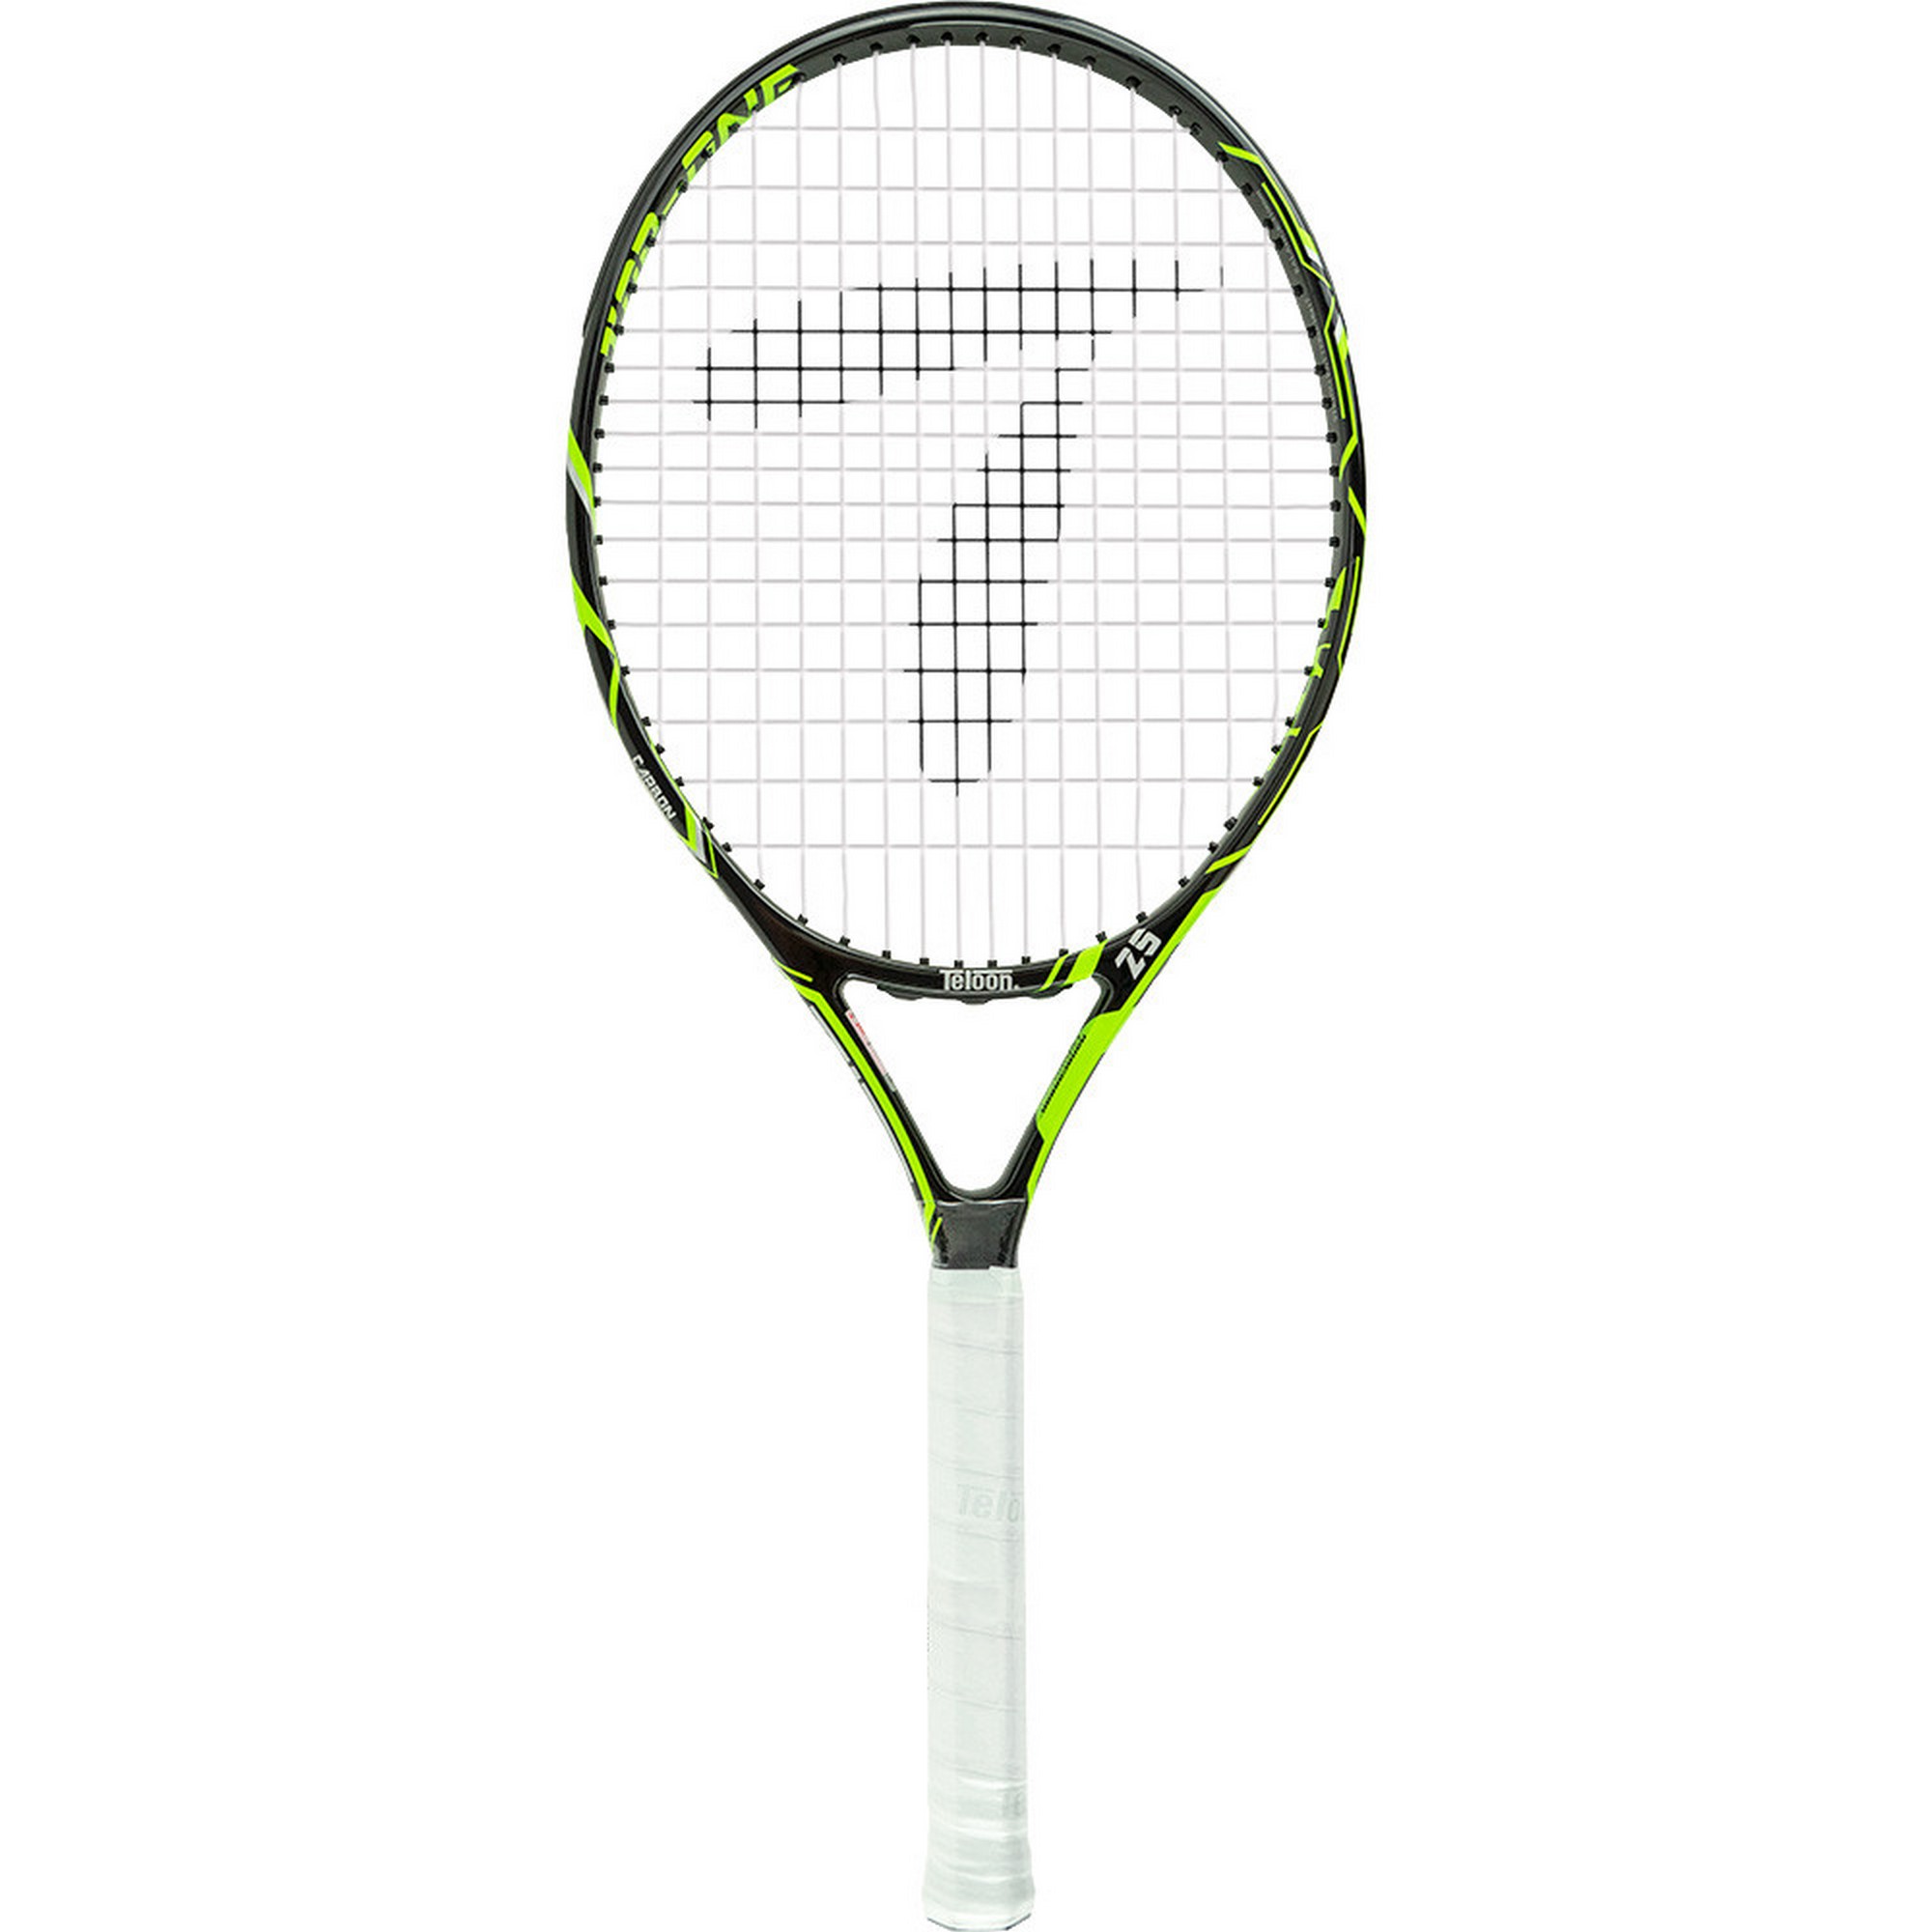 Ракетка для большого тенниса детская Teloon 25 Gr000 335123-GR зеленый